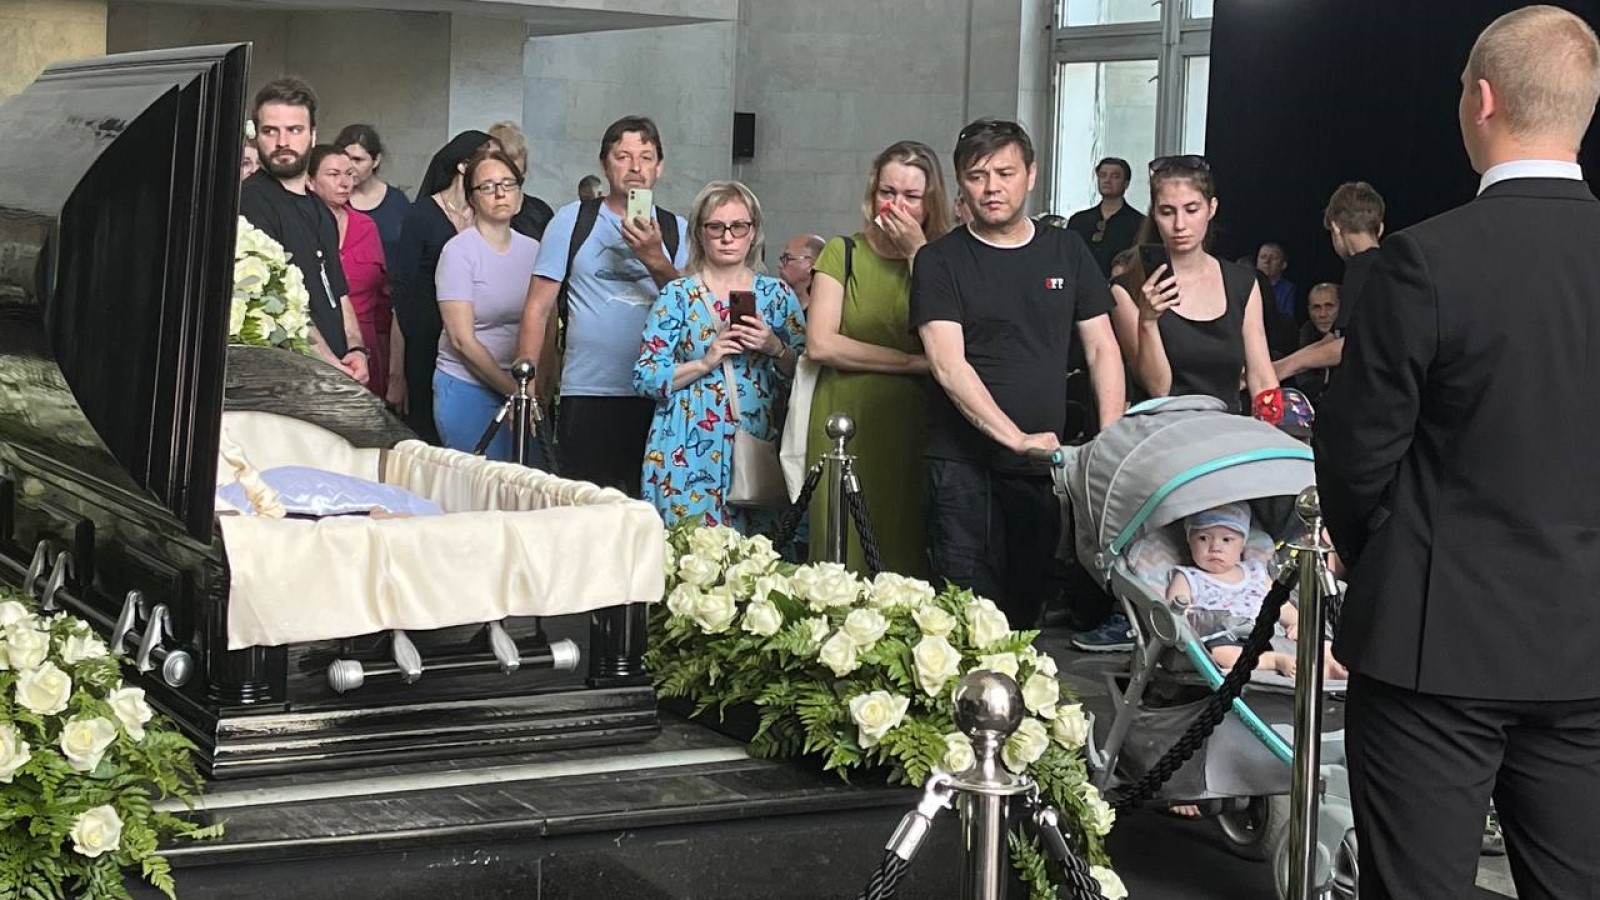 Похоронили главного. Похороныюрмя Шатунова. Семья Шатунова на похоронах Юрия Шатунова.